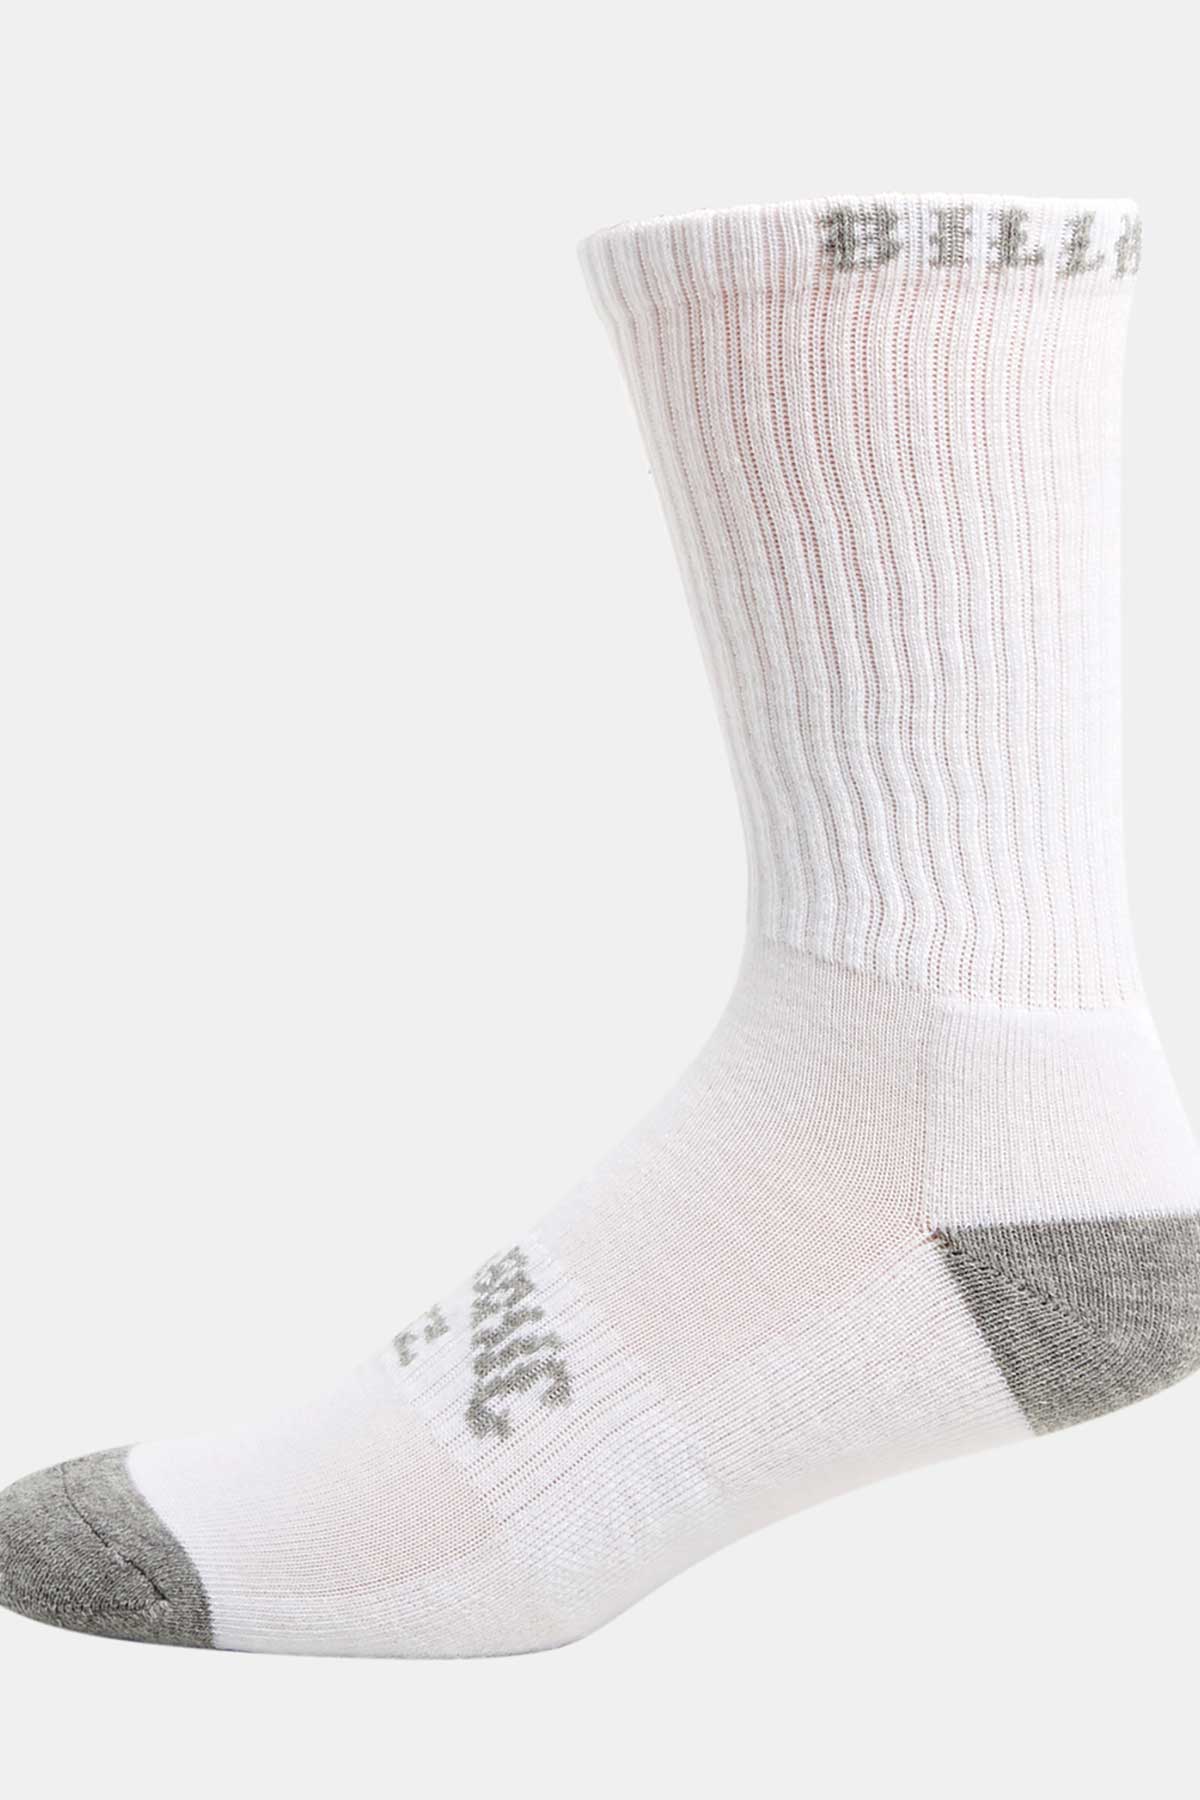 Billabong Sport Socks - 5 Pack Multi, White.